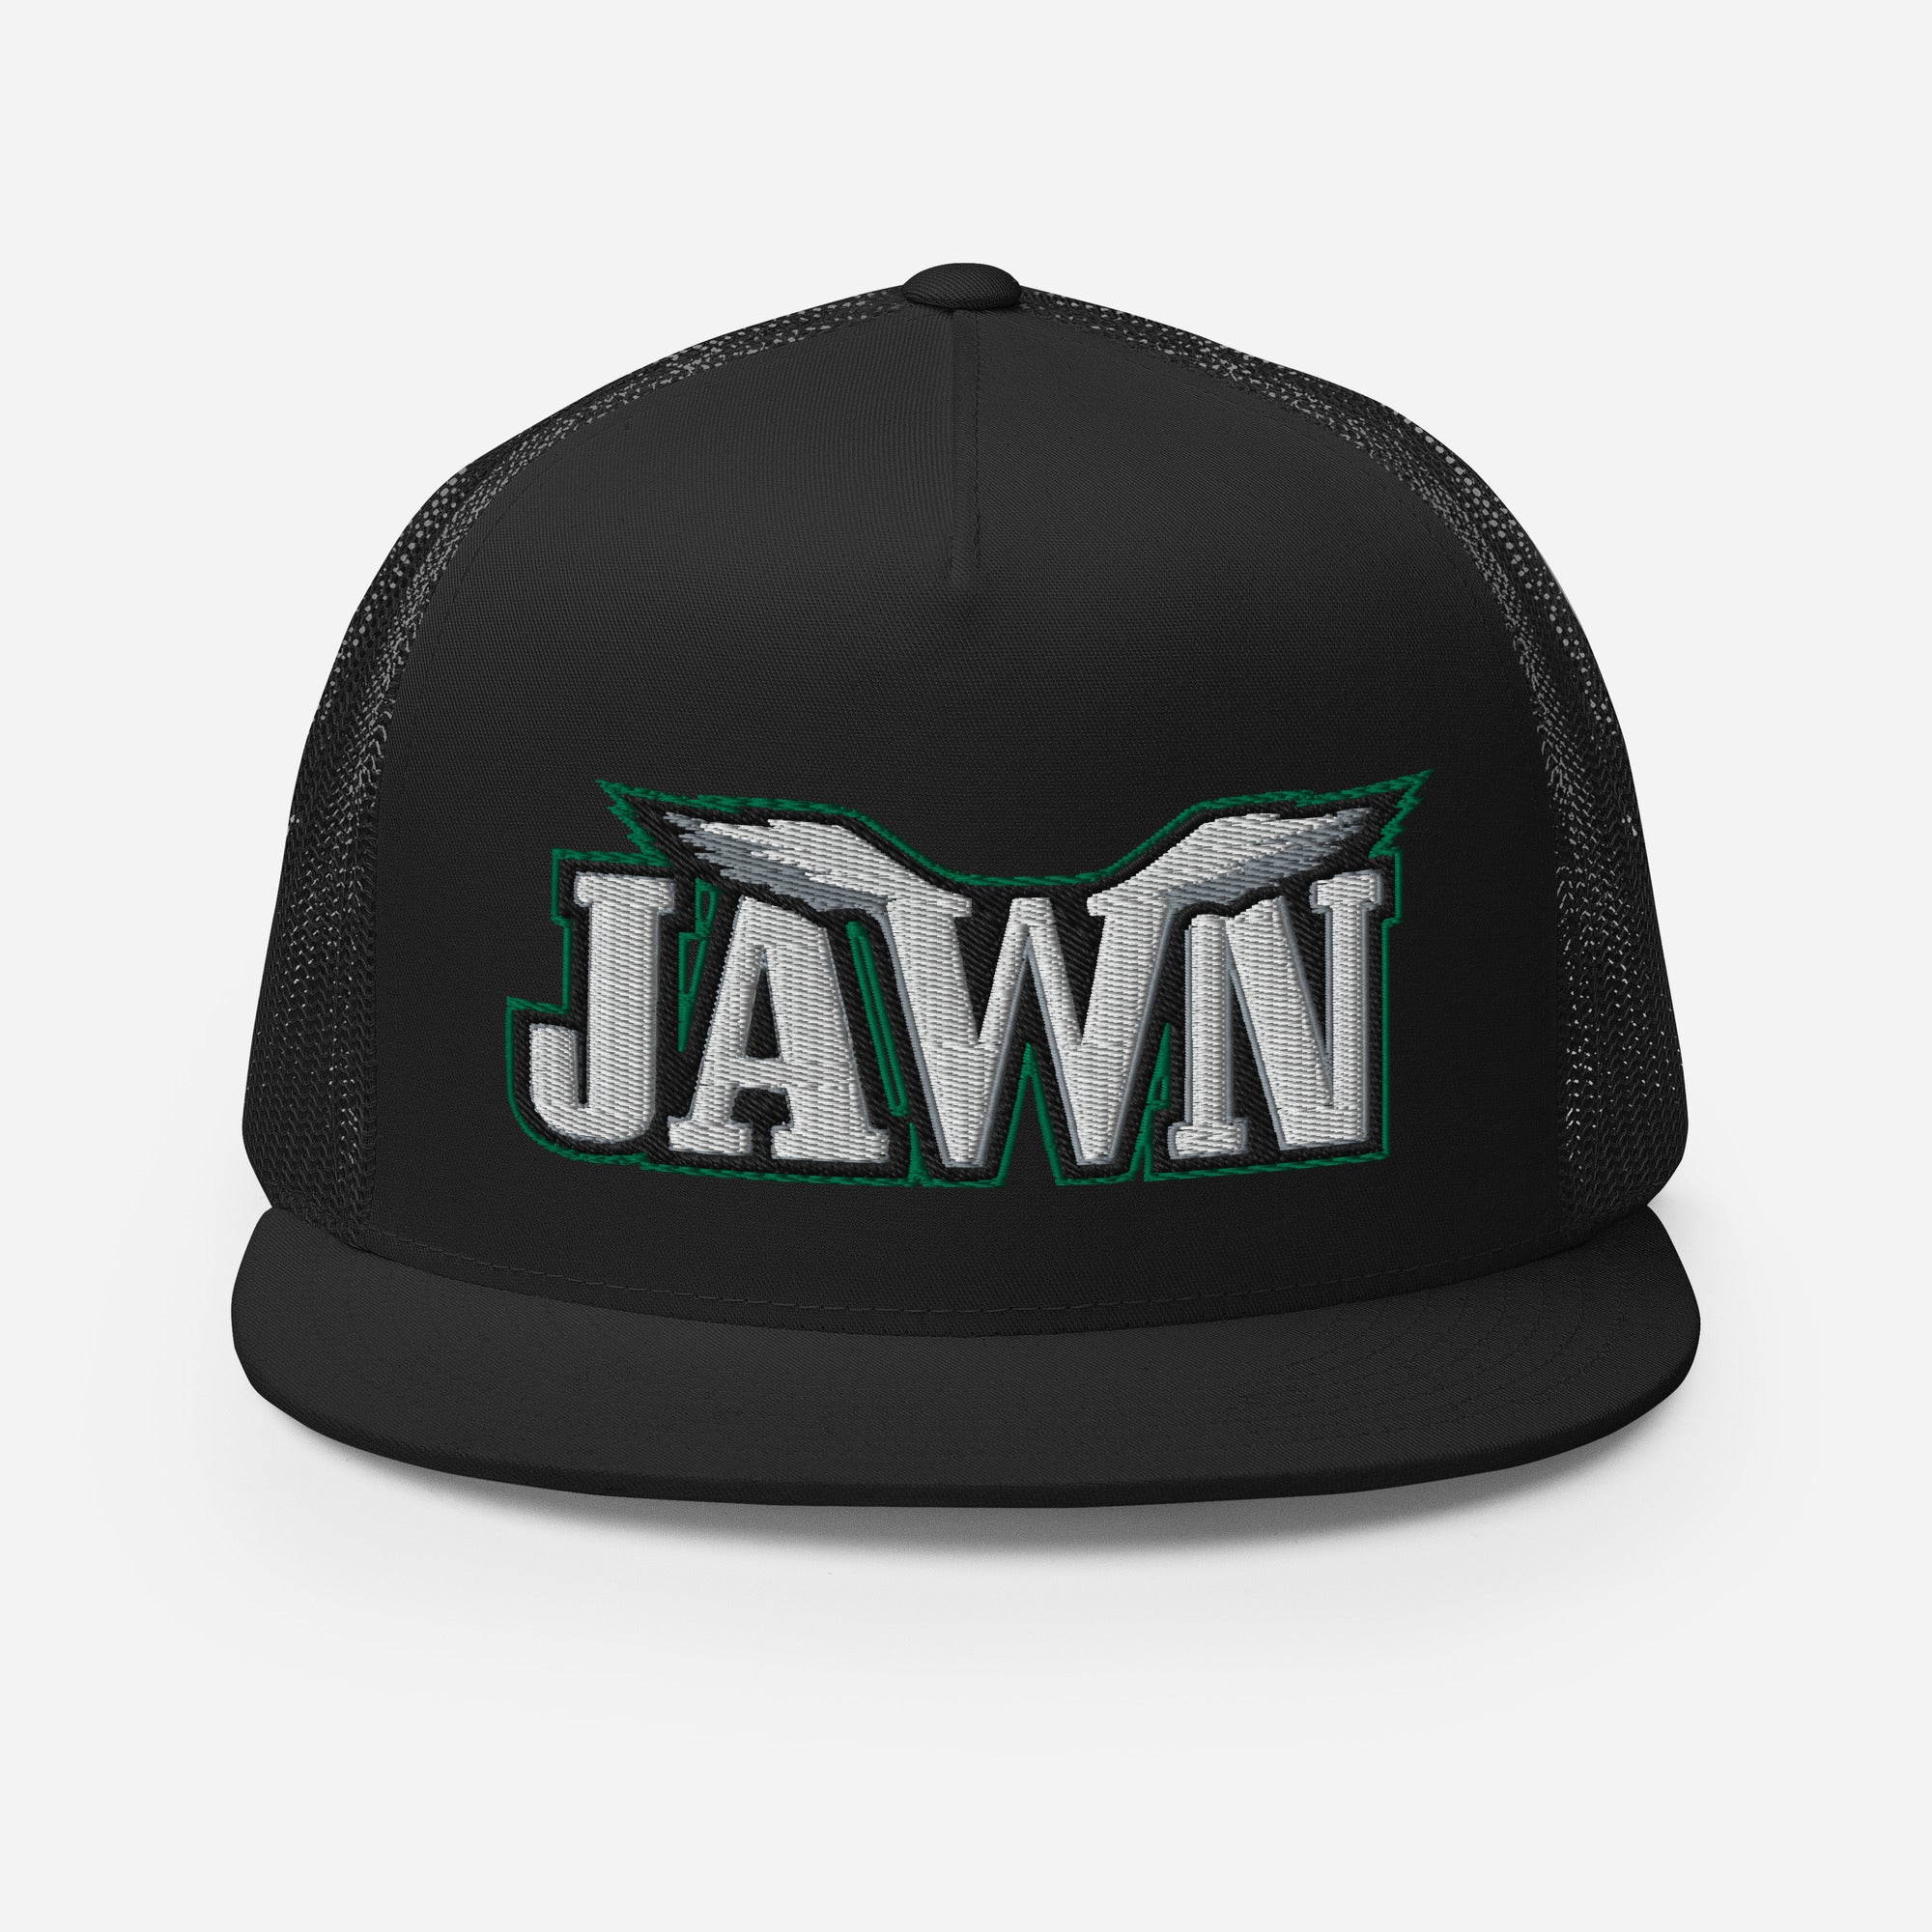 "Birds Jawn" Trucker Hat